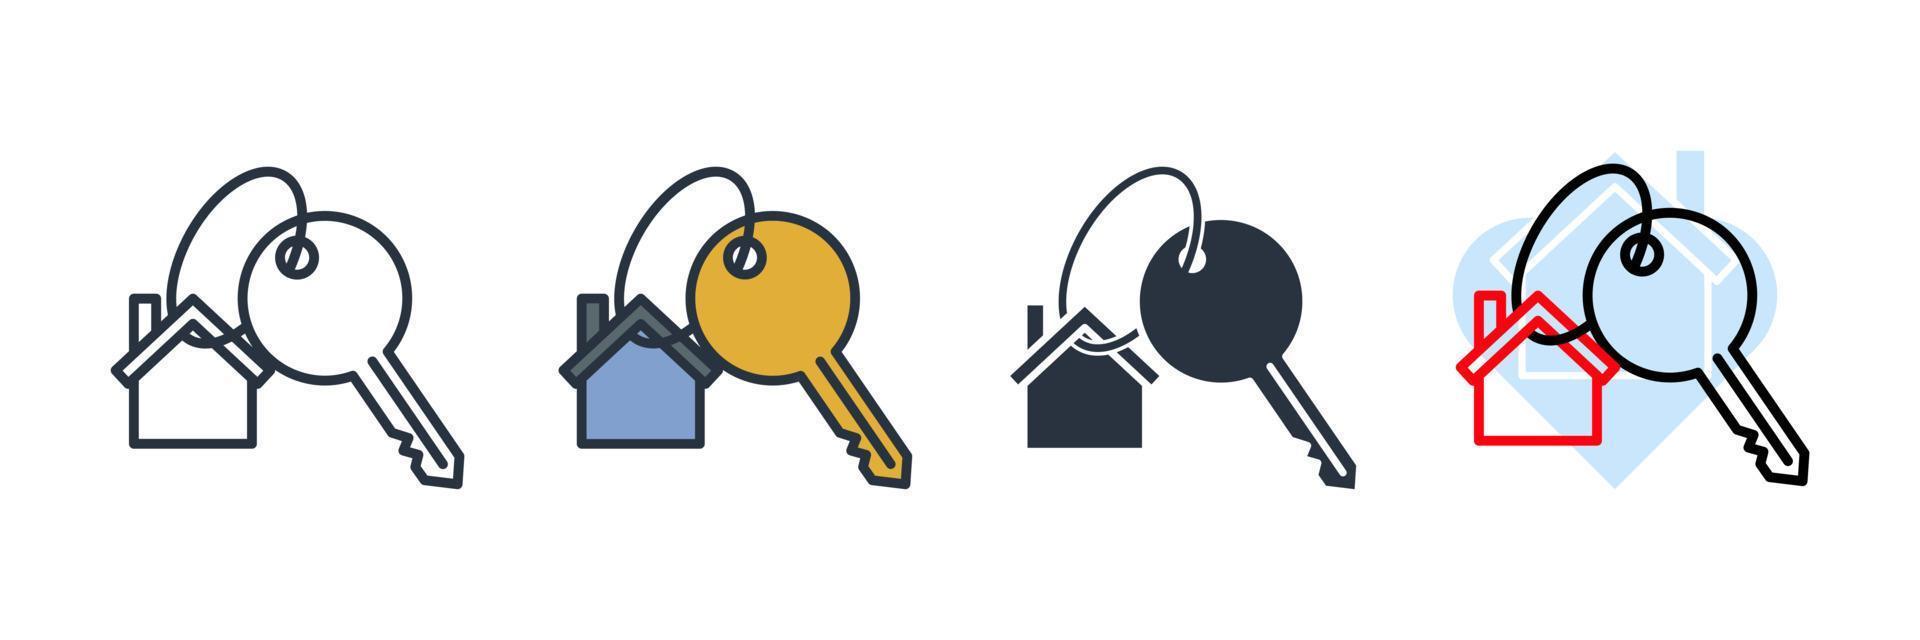 illustrazione vettoriale del logo dell'icona della chiave di casa. modello di simbolo di chiavi di casa per la raccolta di grafica e web design